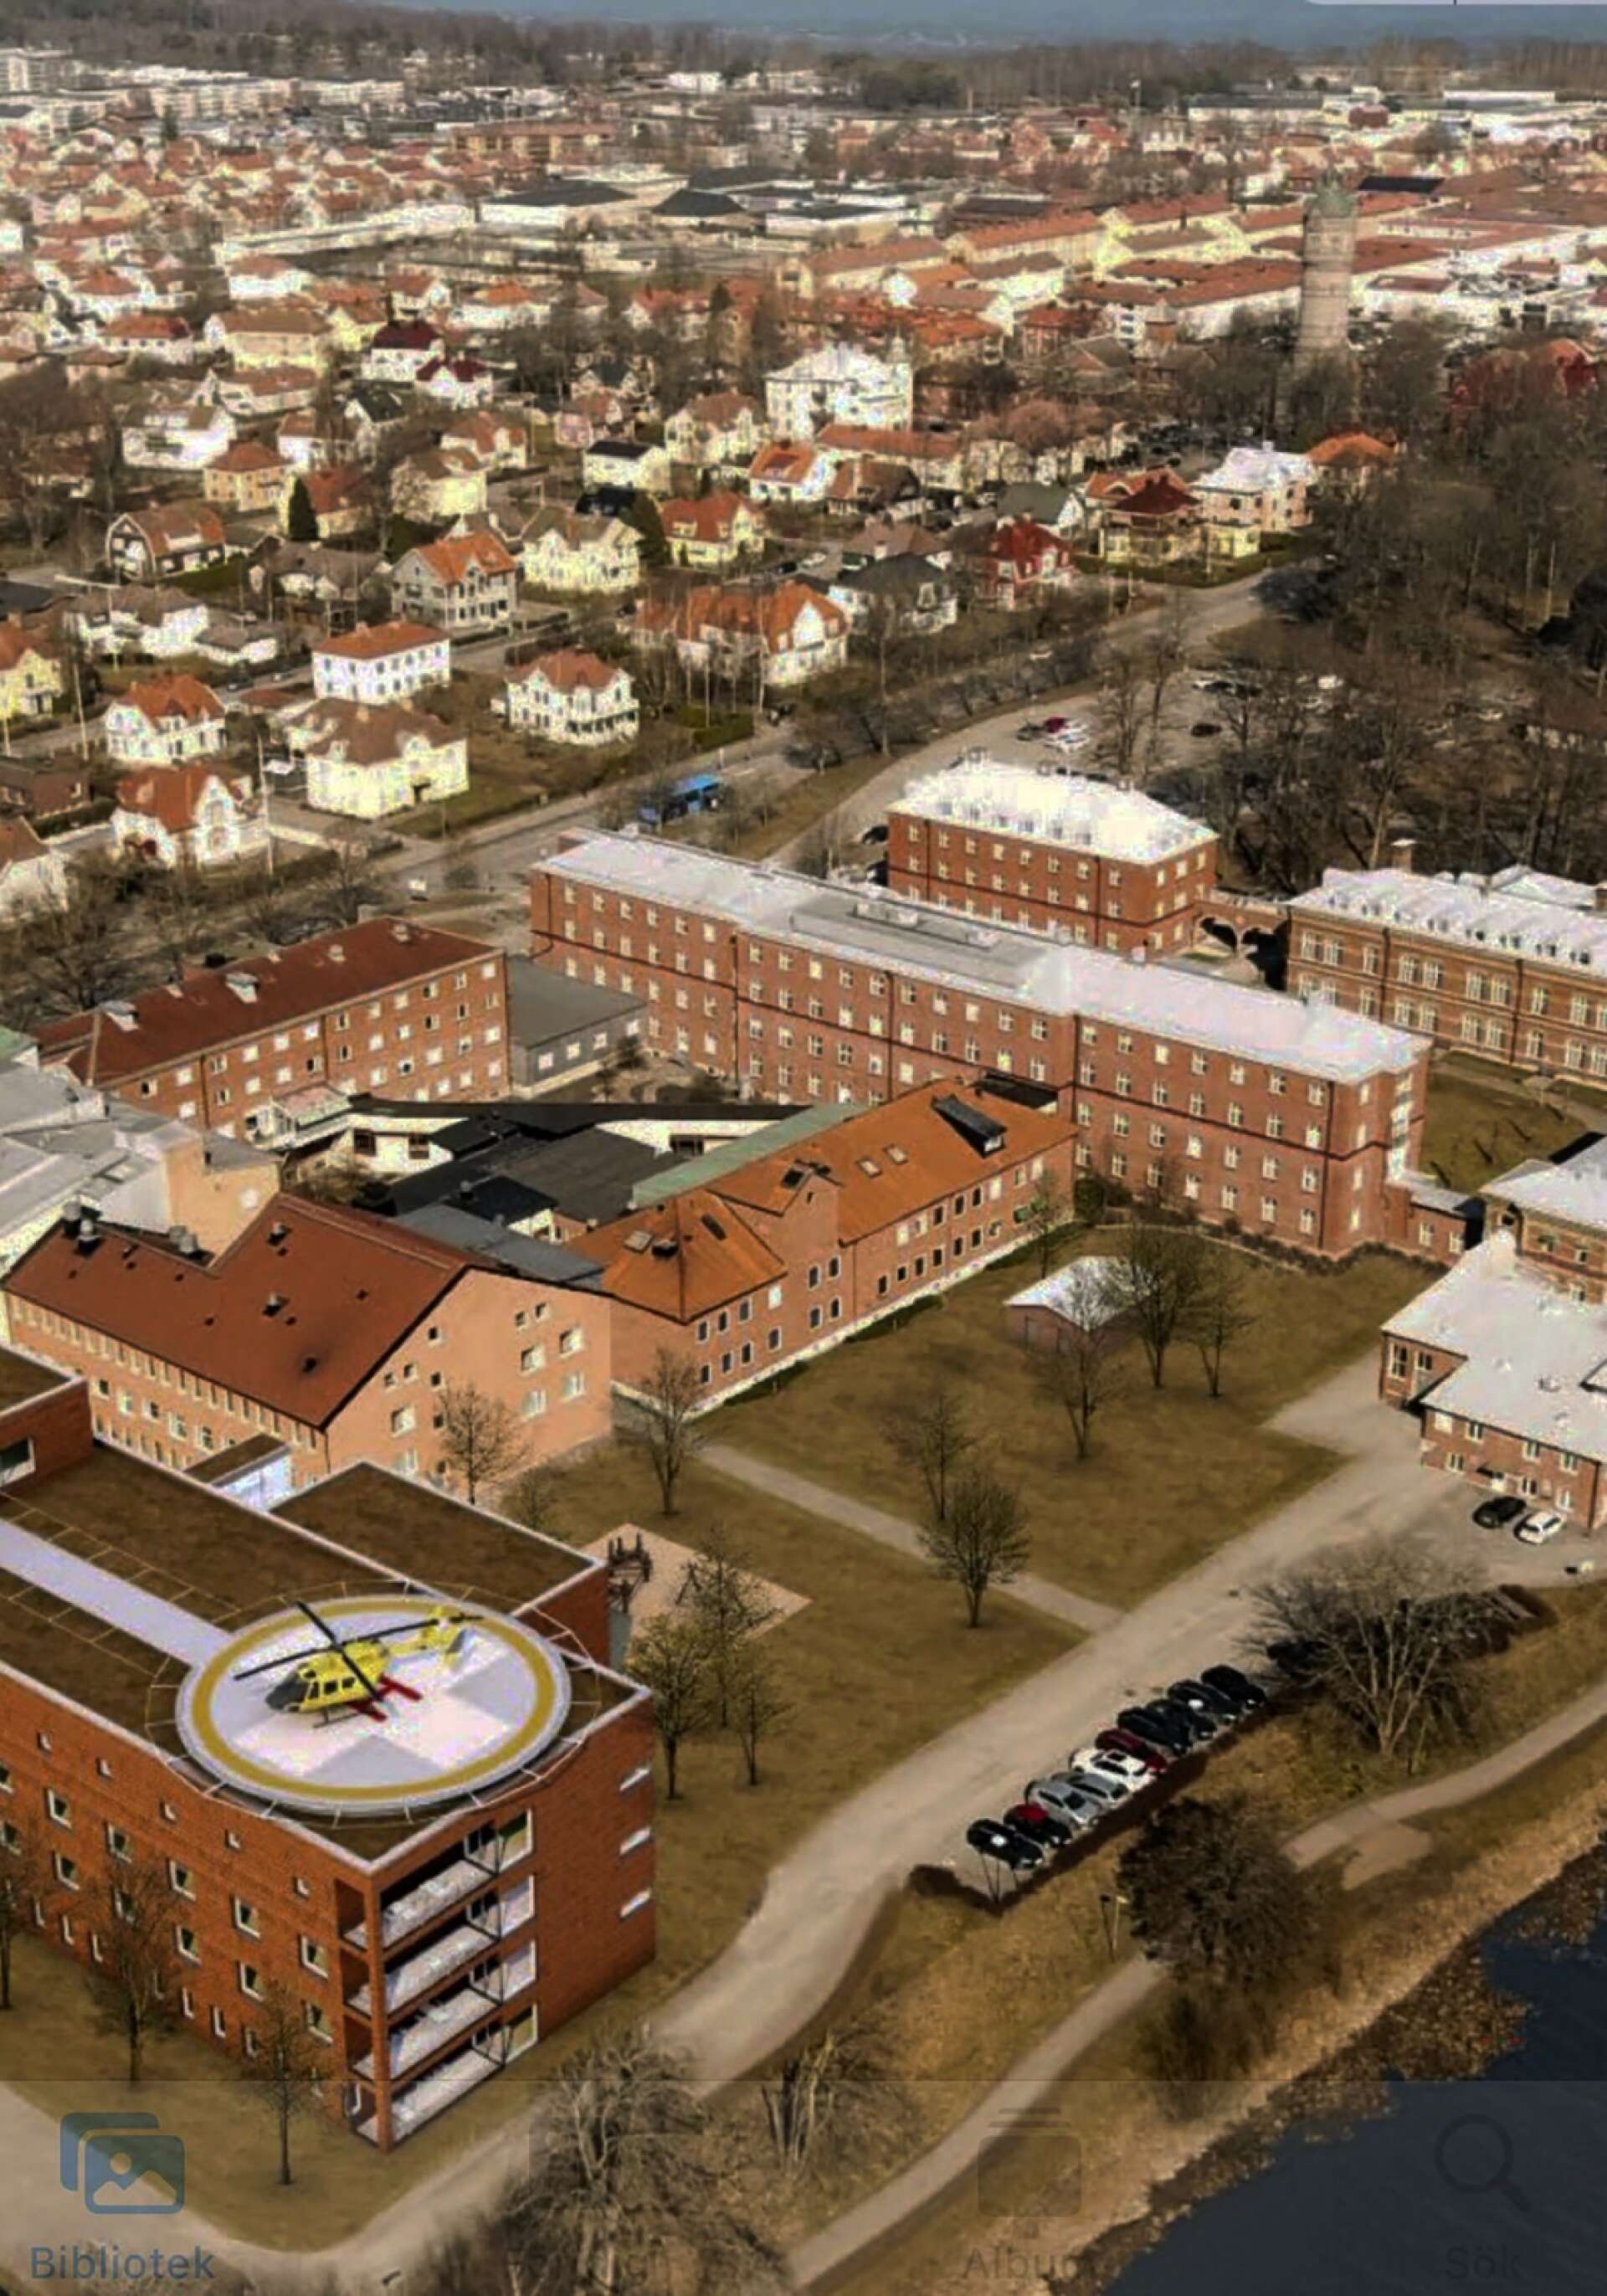 Västfastigheter har tagit fram en visionsskiss över sjukhusområdet i Lidköping där det nederst till vänster har lagts in en helt ny byggnad med helikopterplatta på taket. Om det här blir verklighet är dock ovisst.